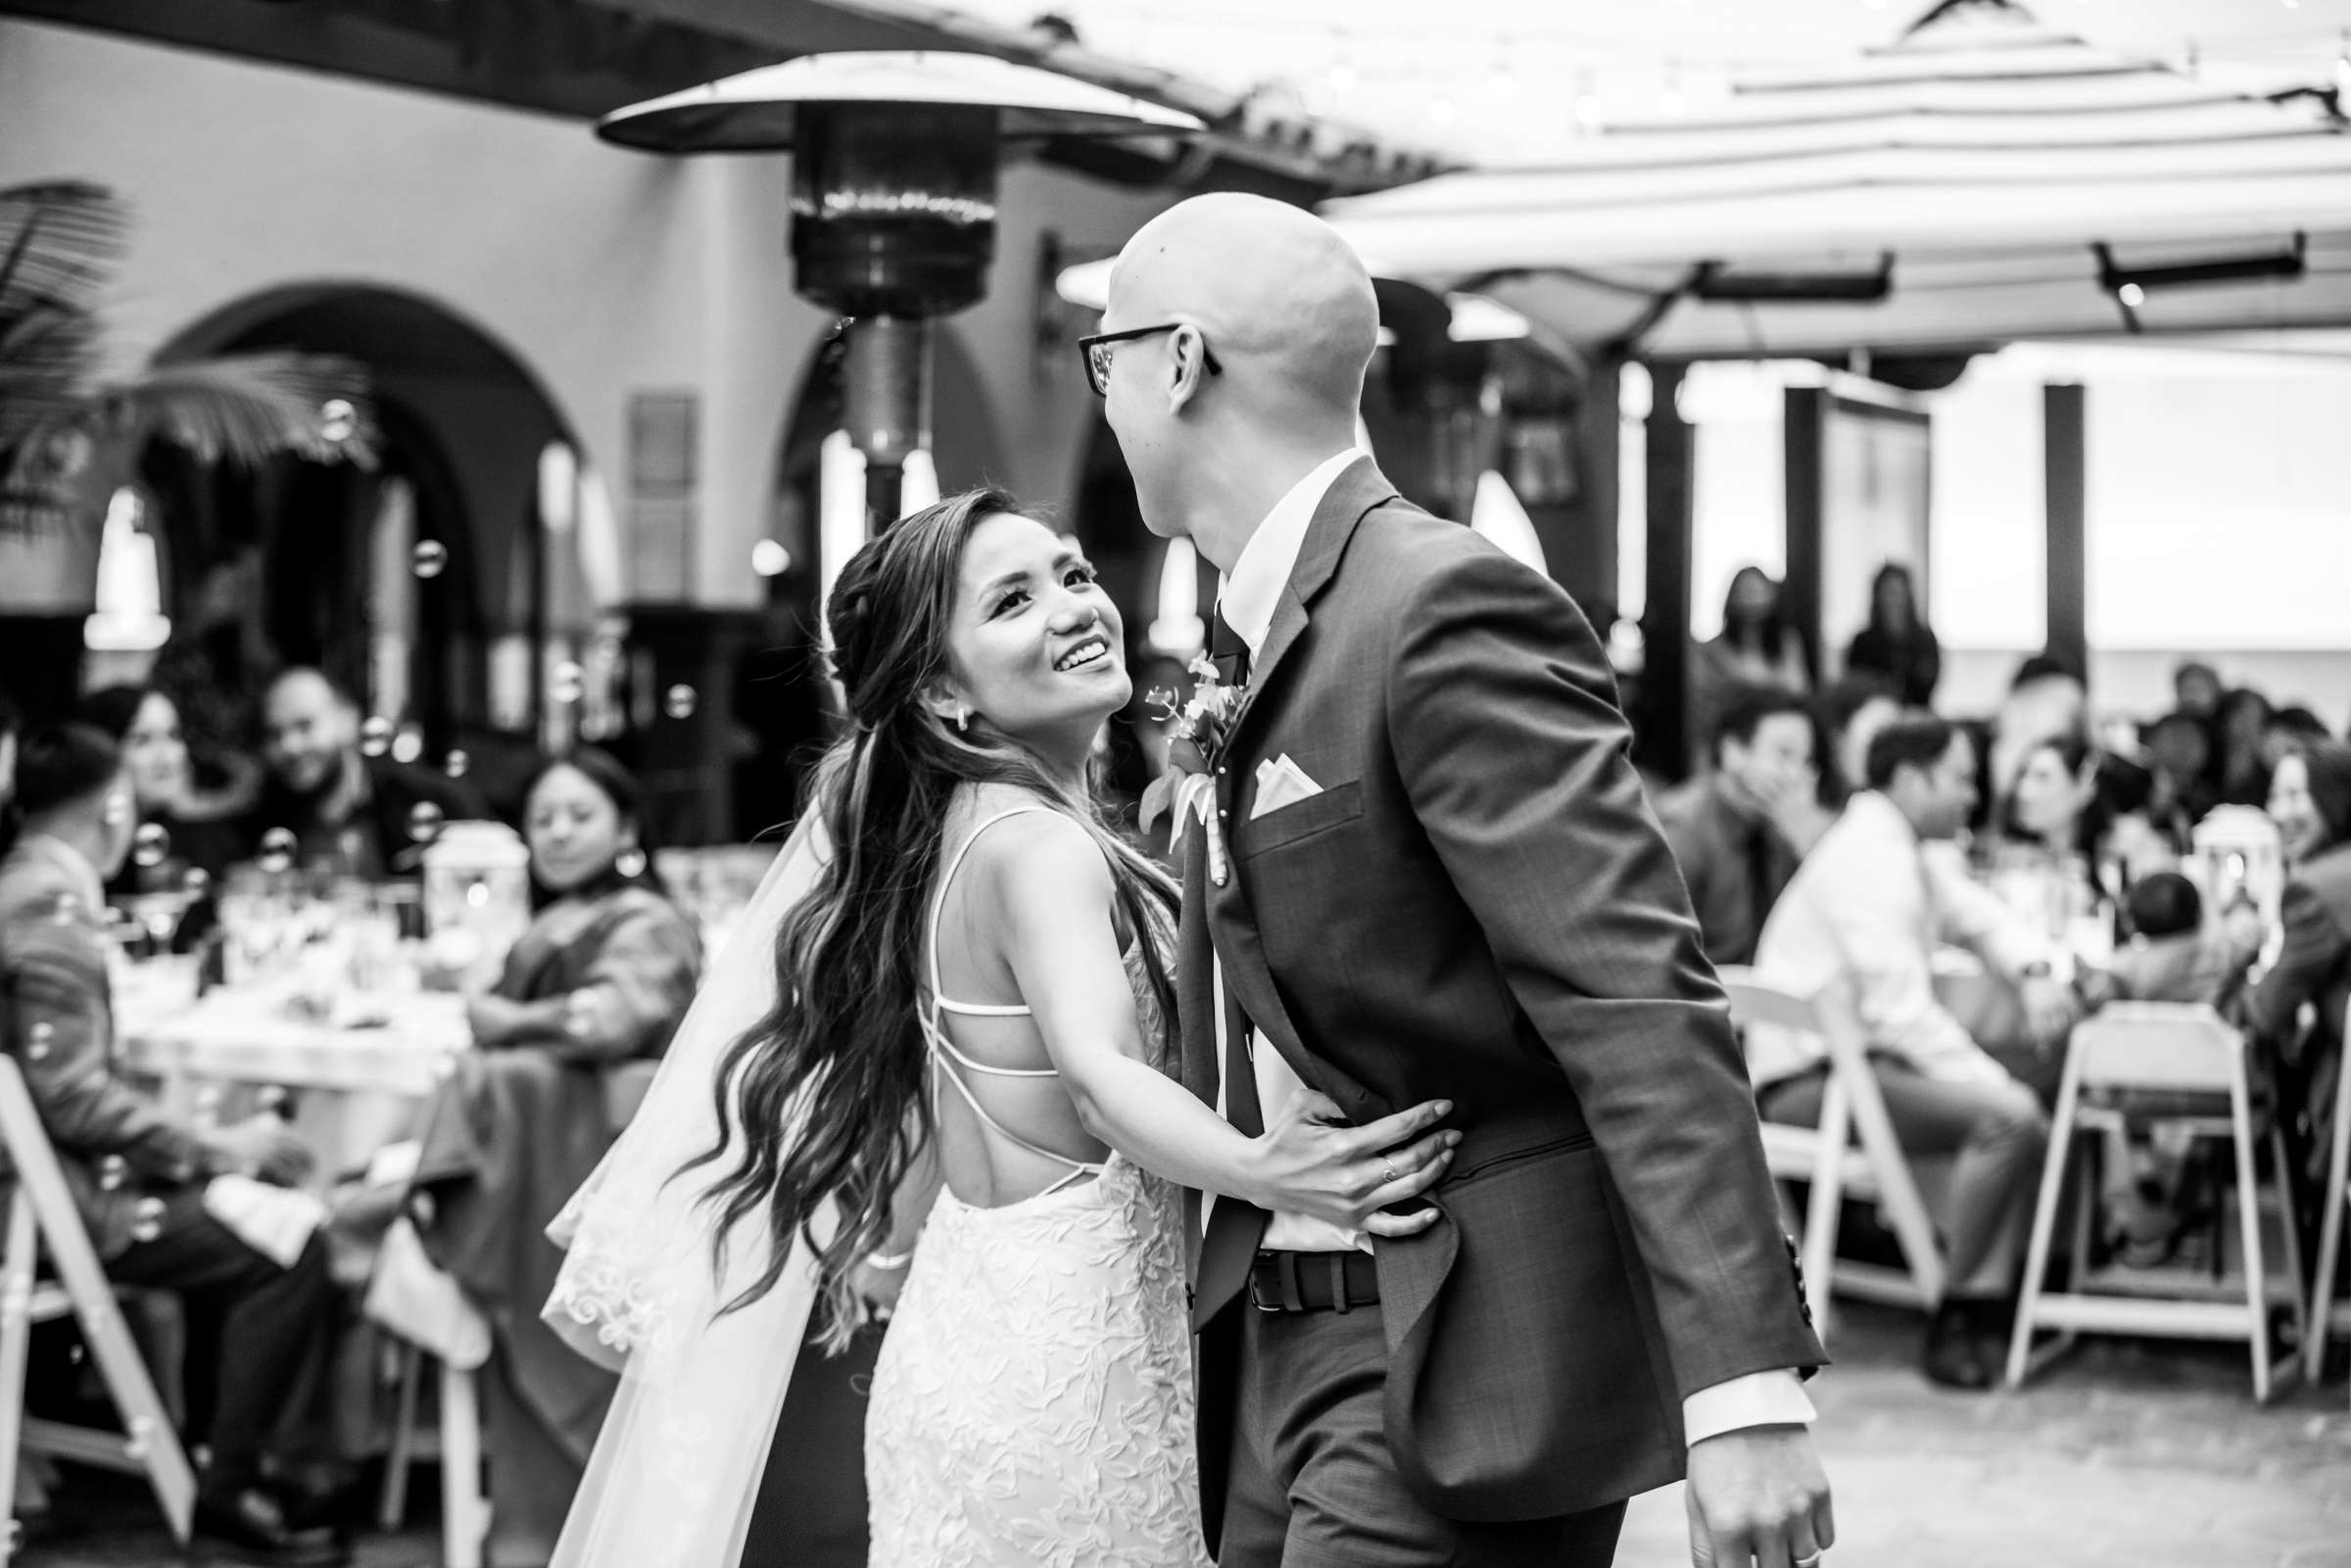 La Jolla Shores Hotel Wedding, Kim and Evan Wedding Photo #24 by True Photography